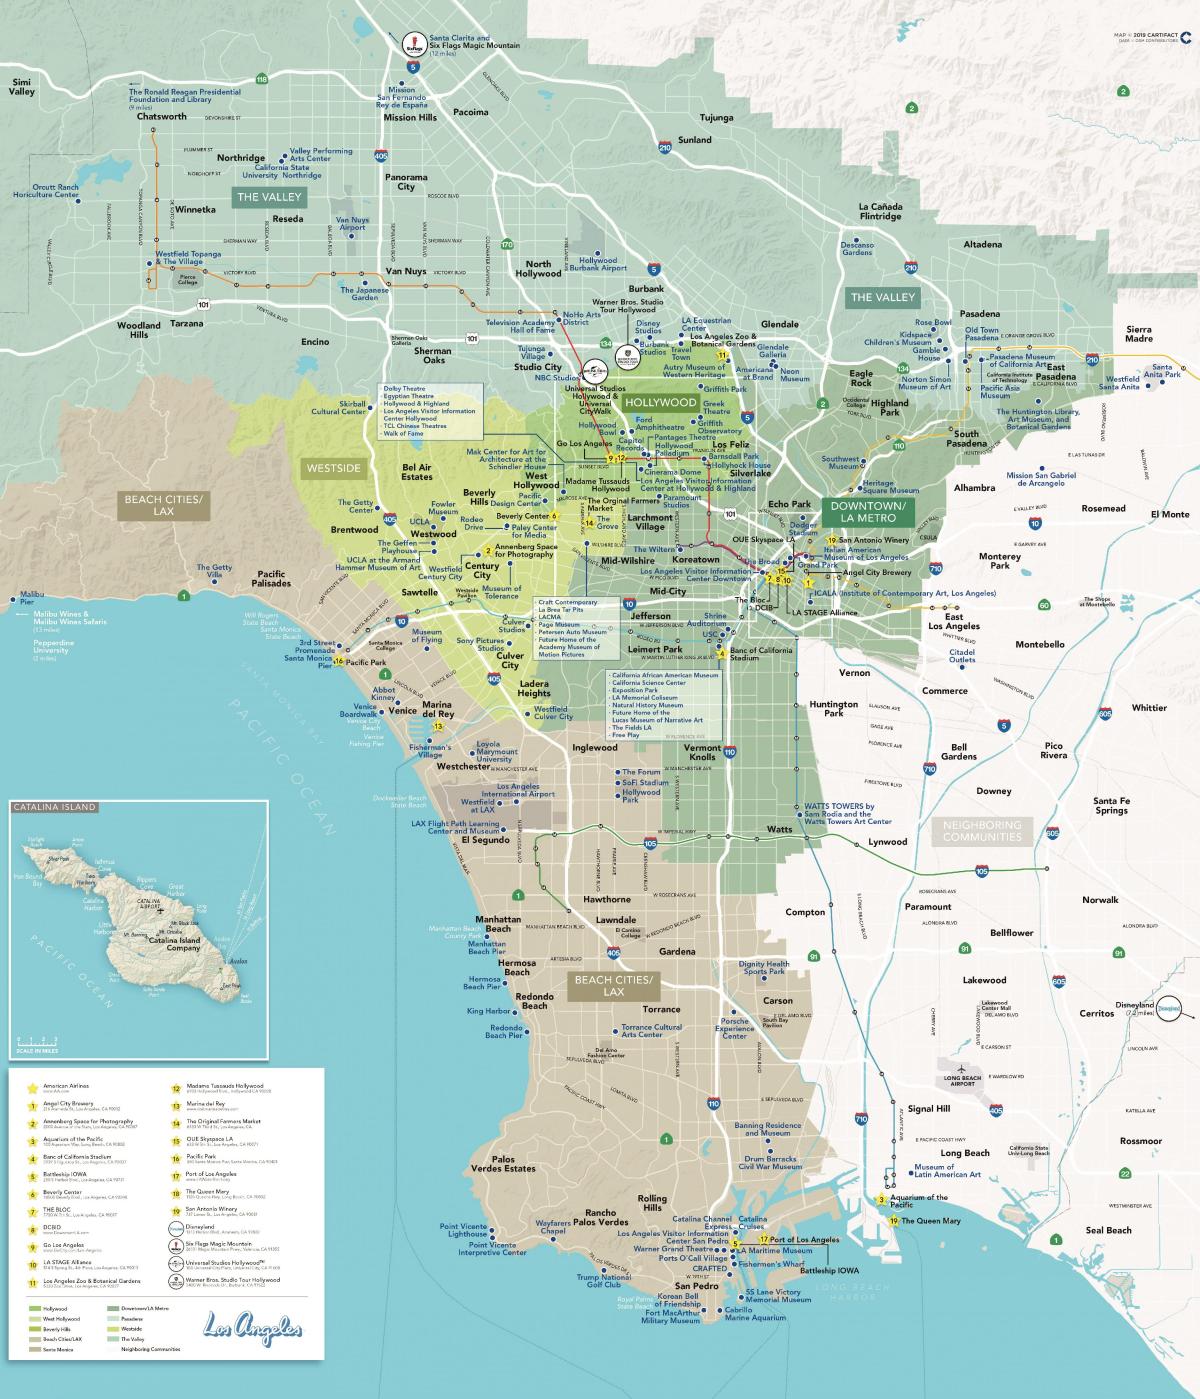 mapa detallado de Los Angeles, california